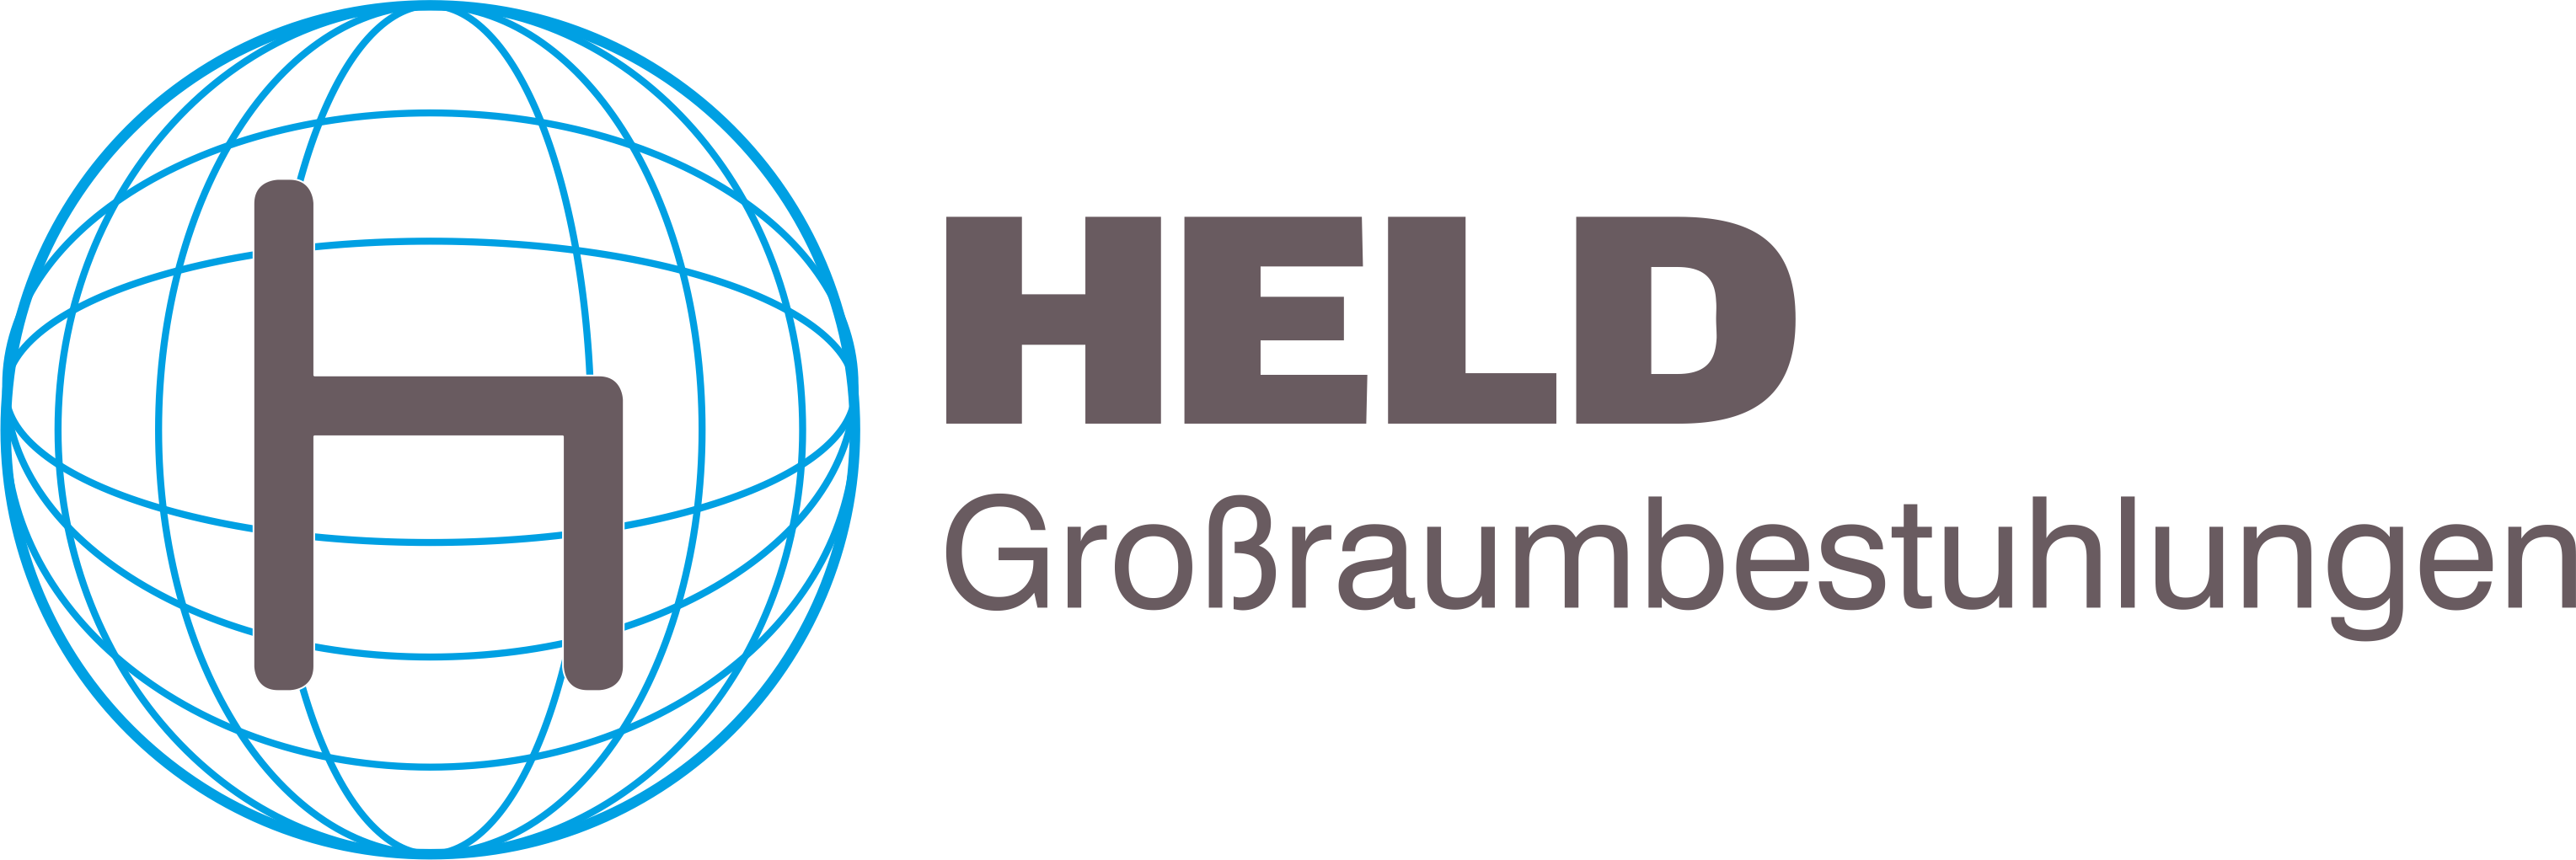 Logo-Held-Großraumbestuhlungen-Bernried-Starnbergersee